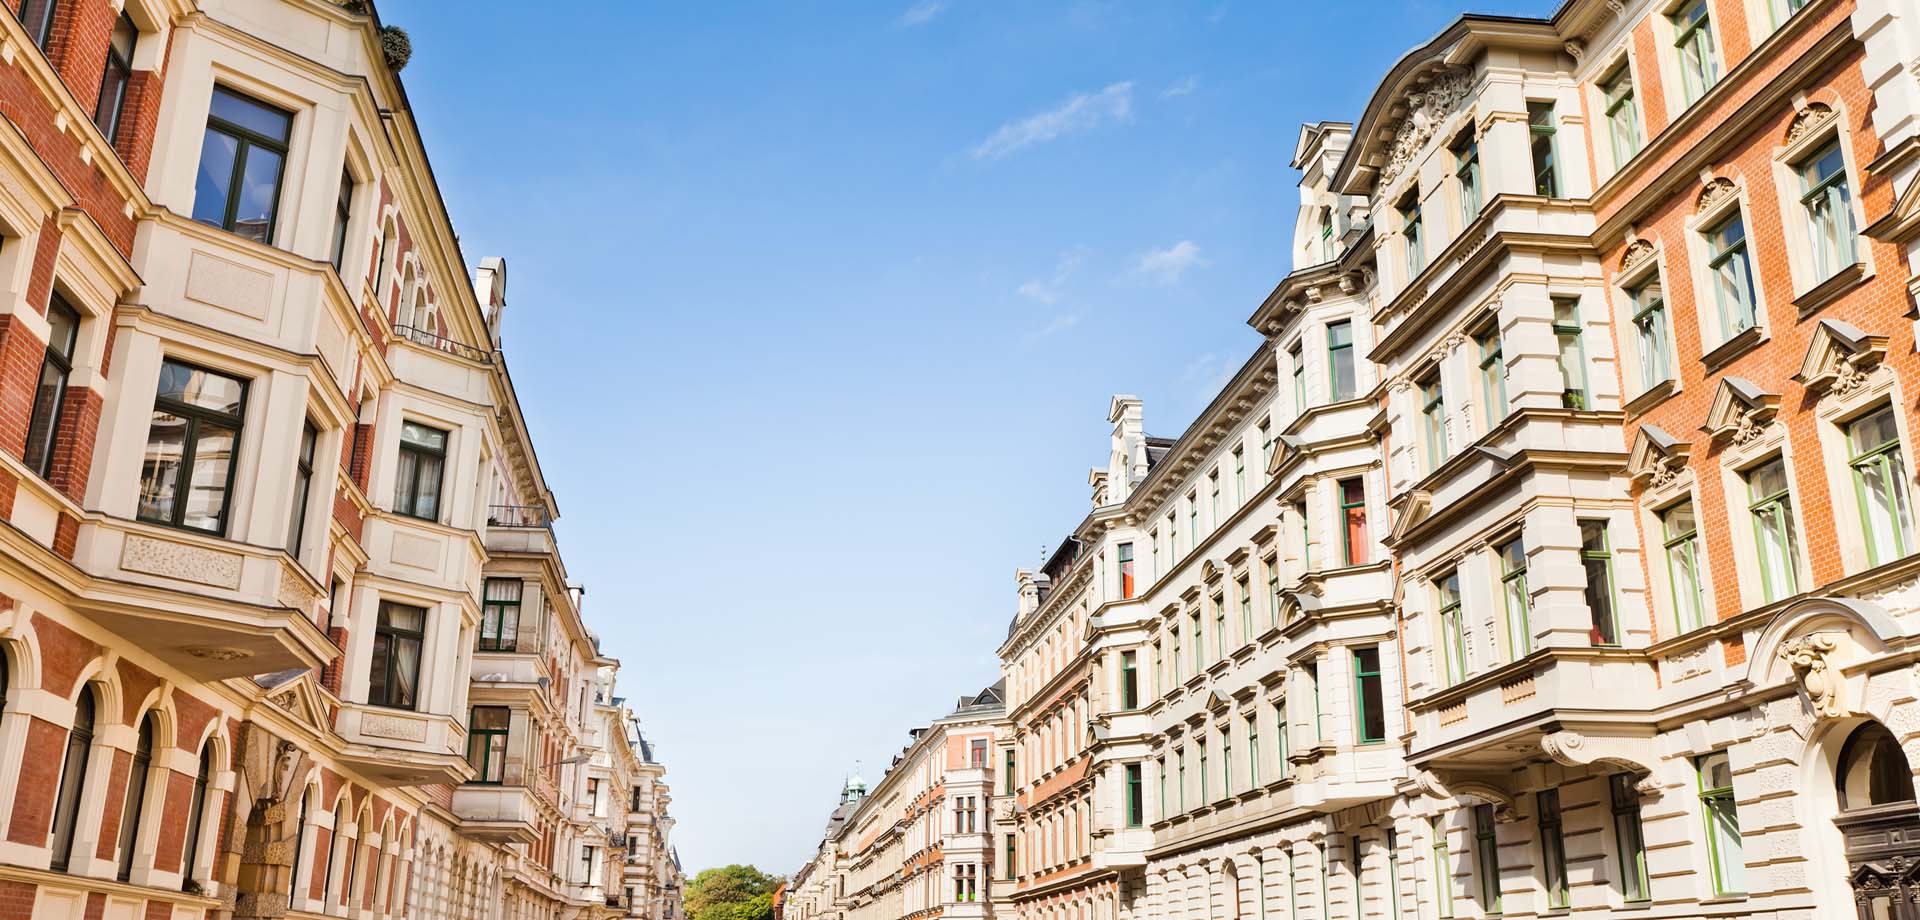 Straße mit Wohn-und Geschäftshäusern, Wohn-und Geschäftshäuser gehören auch zum Assetclass im Portfolio von Zinshaus Oberbayern